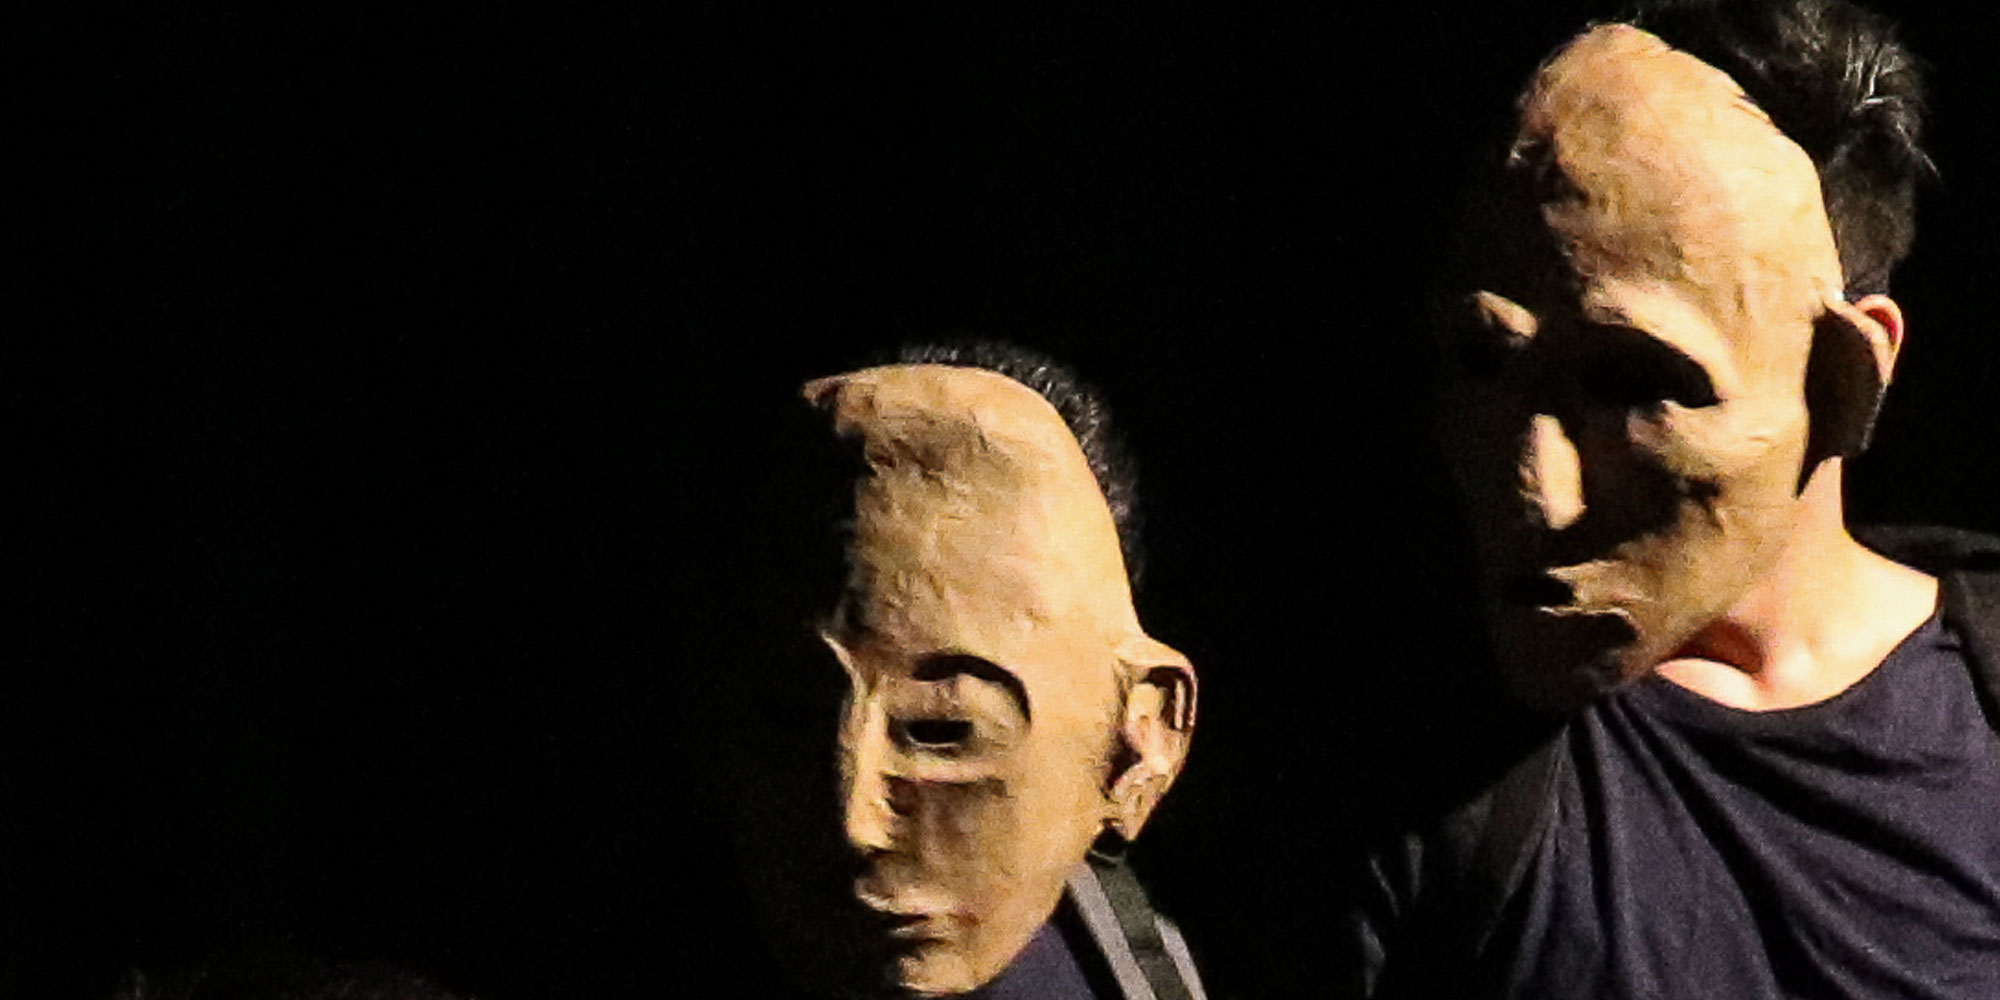 Hier sieht man zwei Schauspieler mit beigen Masken, die ihr komplettes Gesicht verdecken, die schräg nach unten blicken. Der Hintergrund ist dunkel.